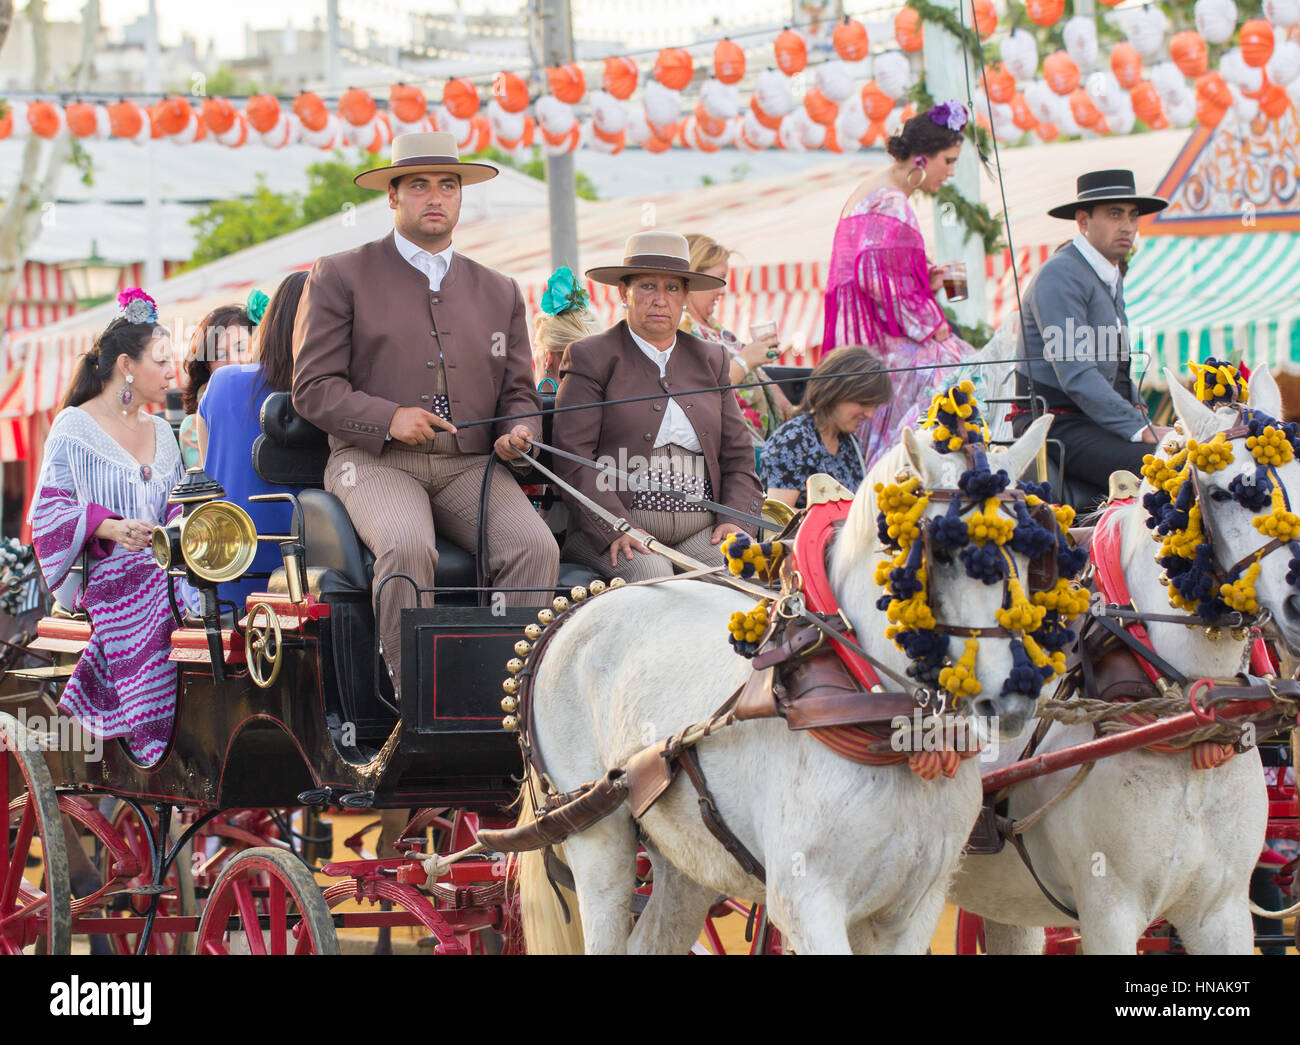 Sevilla, España - APR, 25: gente vestida con trajes típicos carruajes a caballo y la celebración de la Feria de Abril de Sevilla, 25 de abril de 2014 en Sev Foto de stock